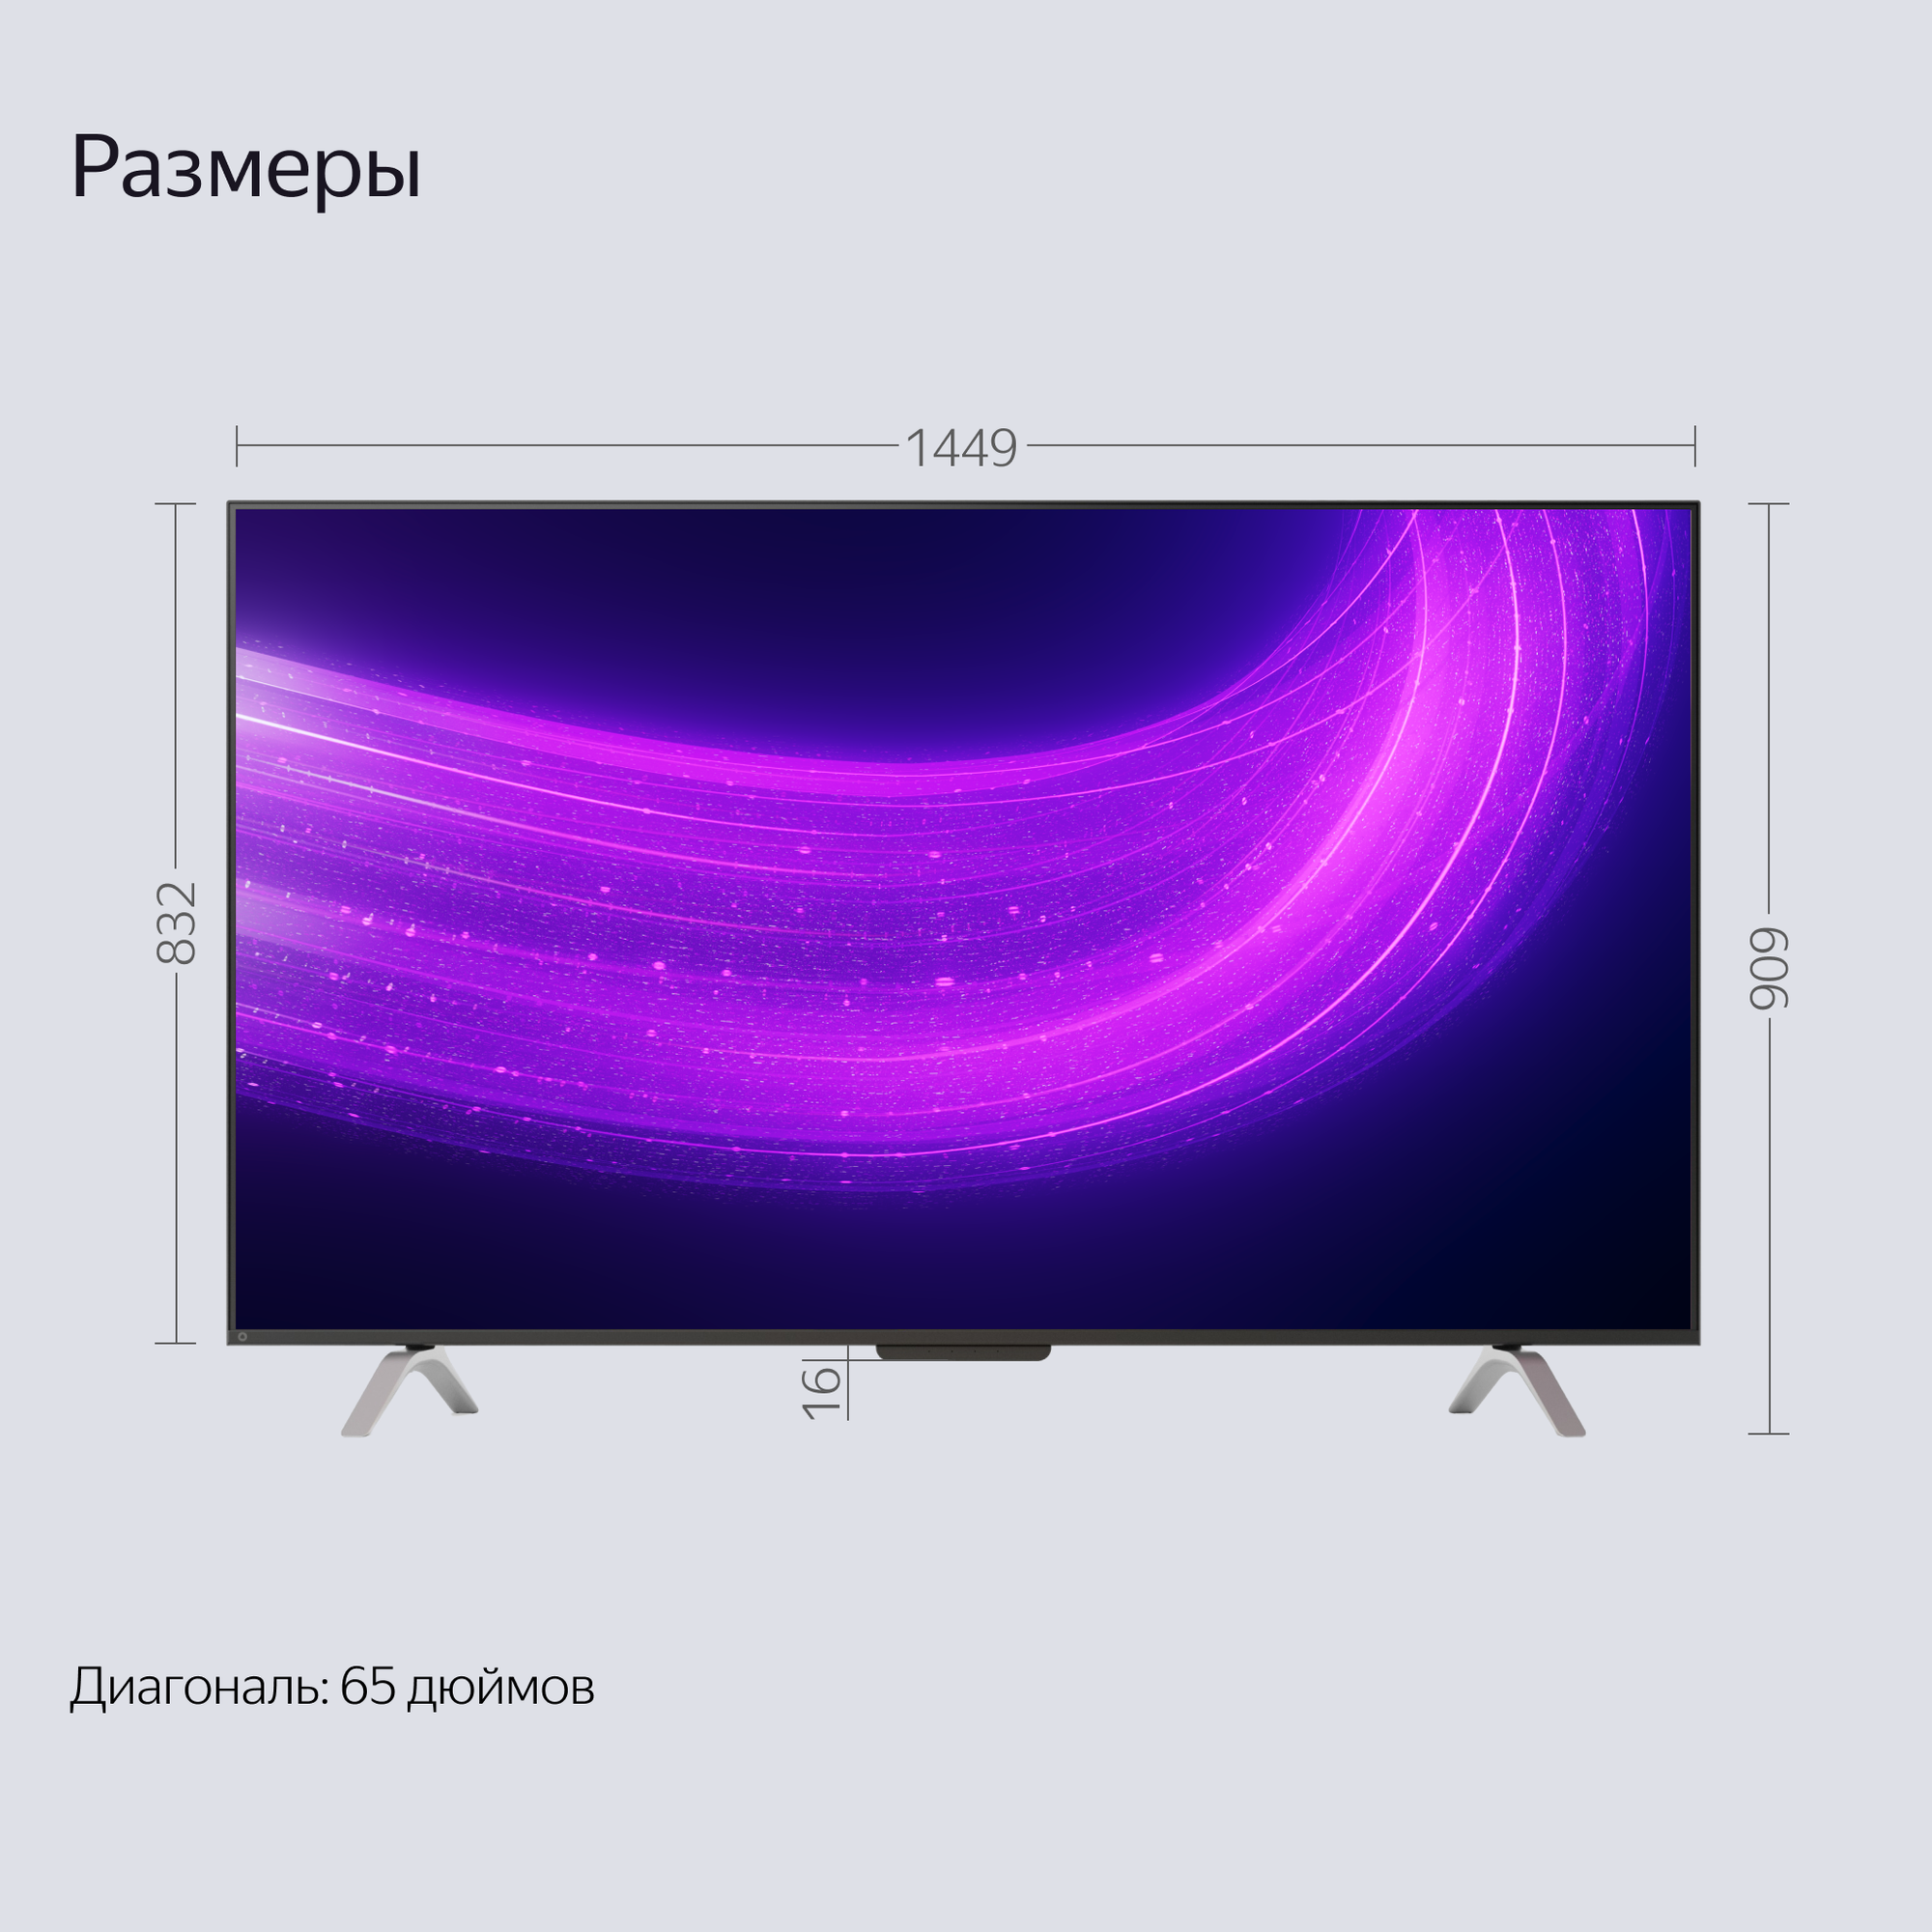 Яндекс ТВ Станция Про новый телевизор с Алисой на YandexGPT,  65“ 4K UHD, черный